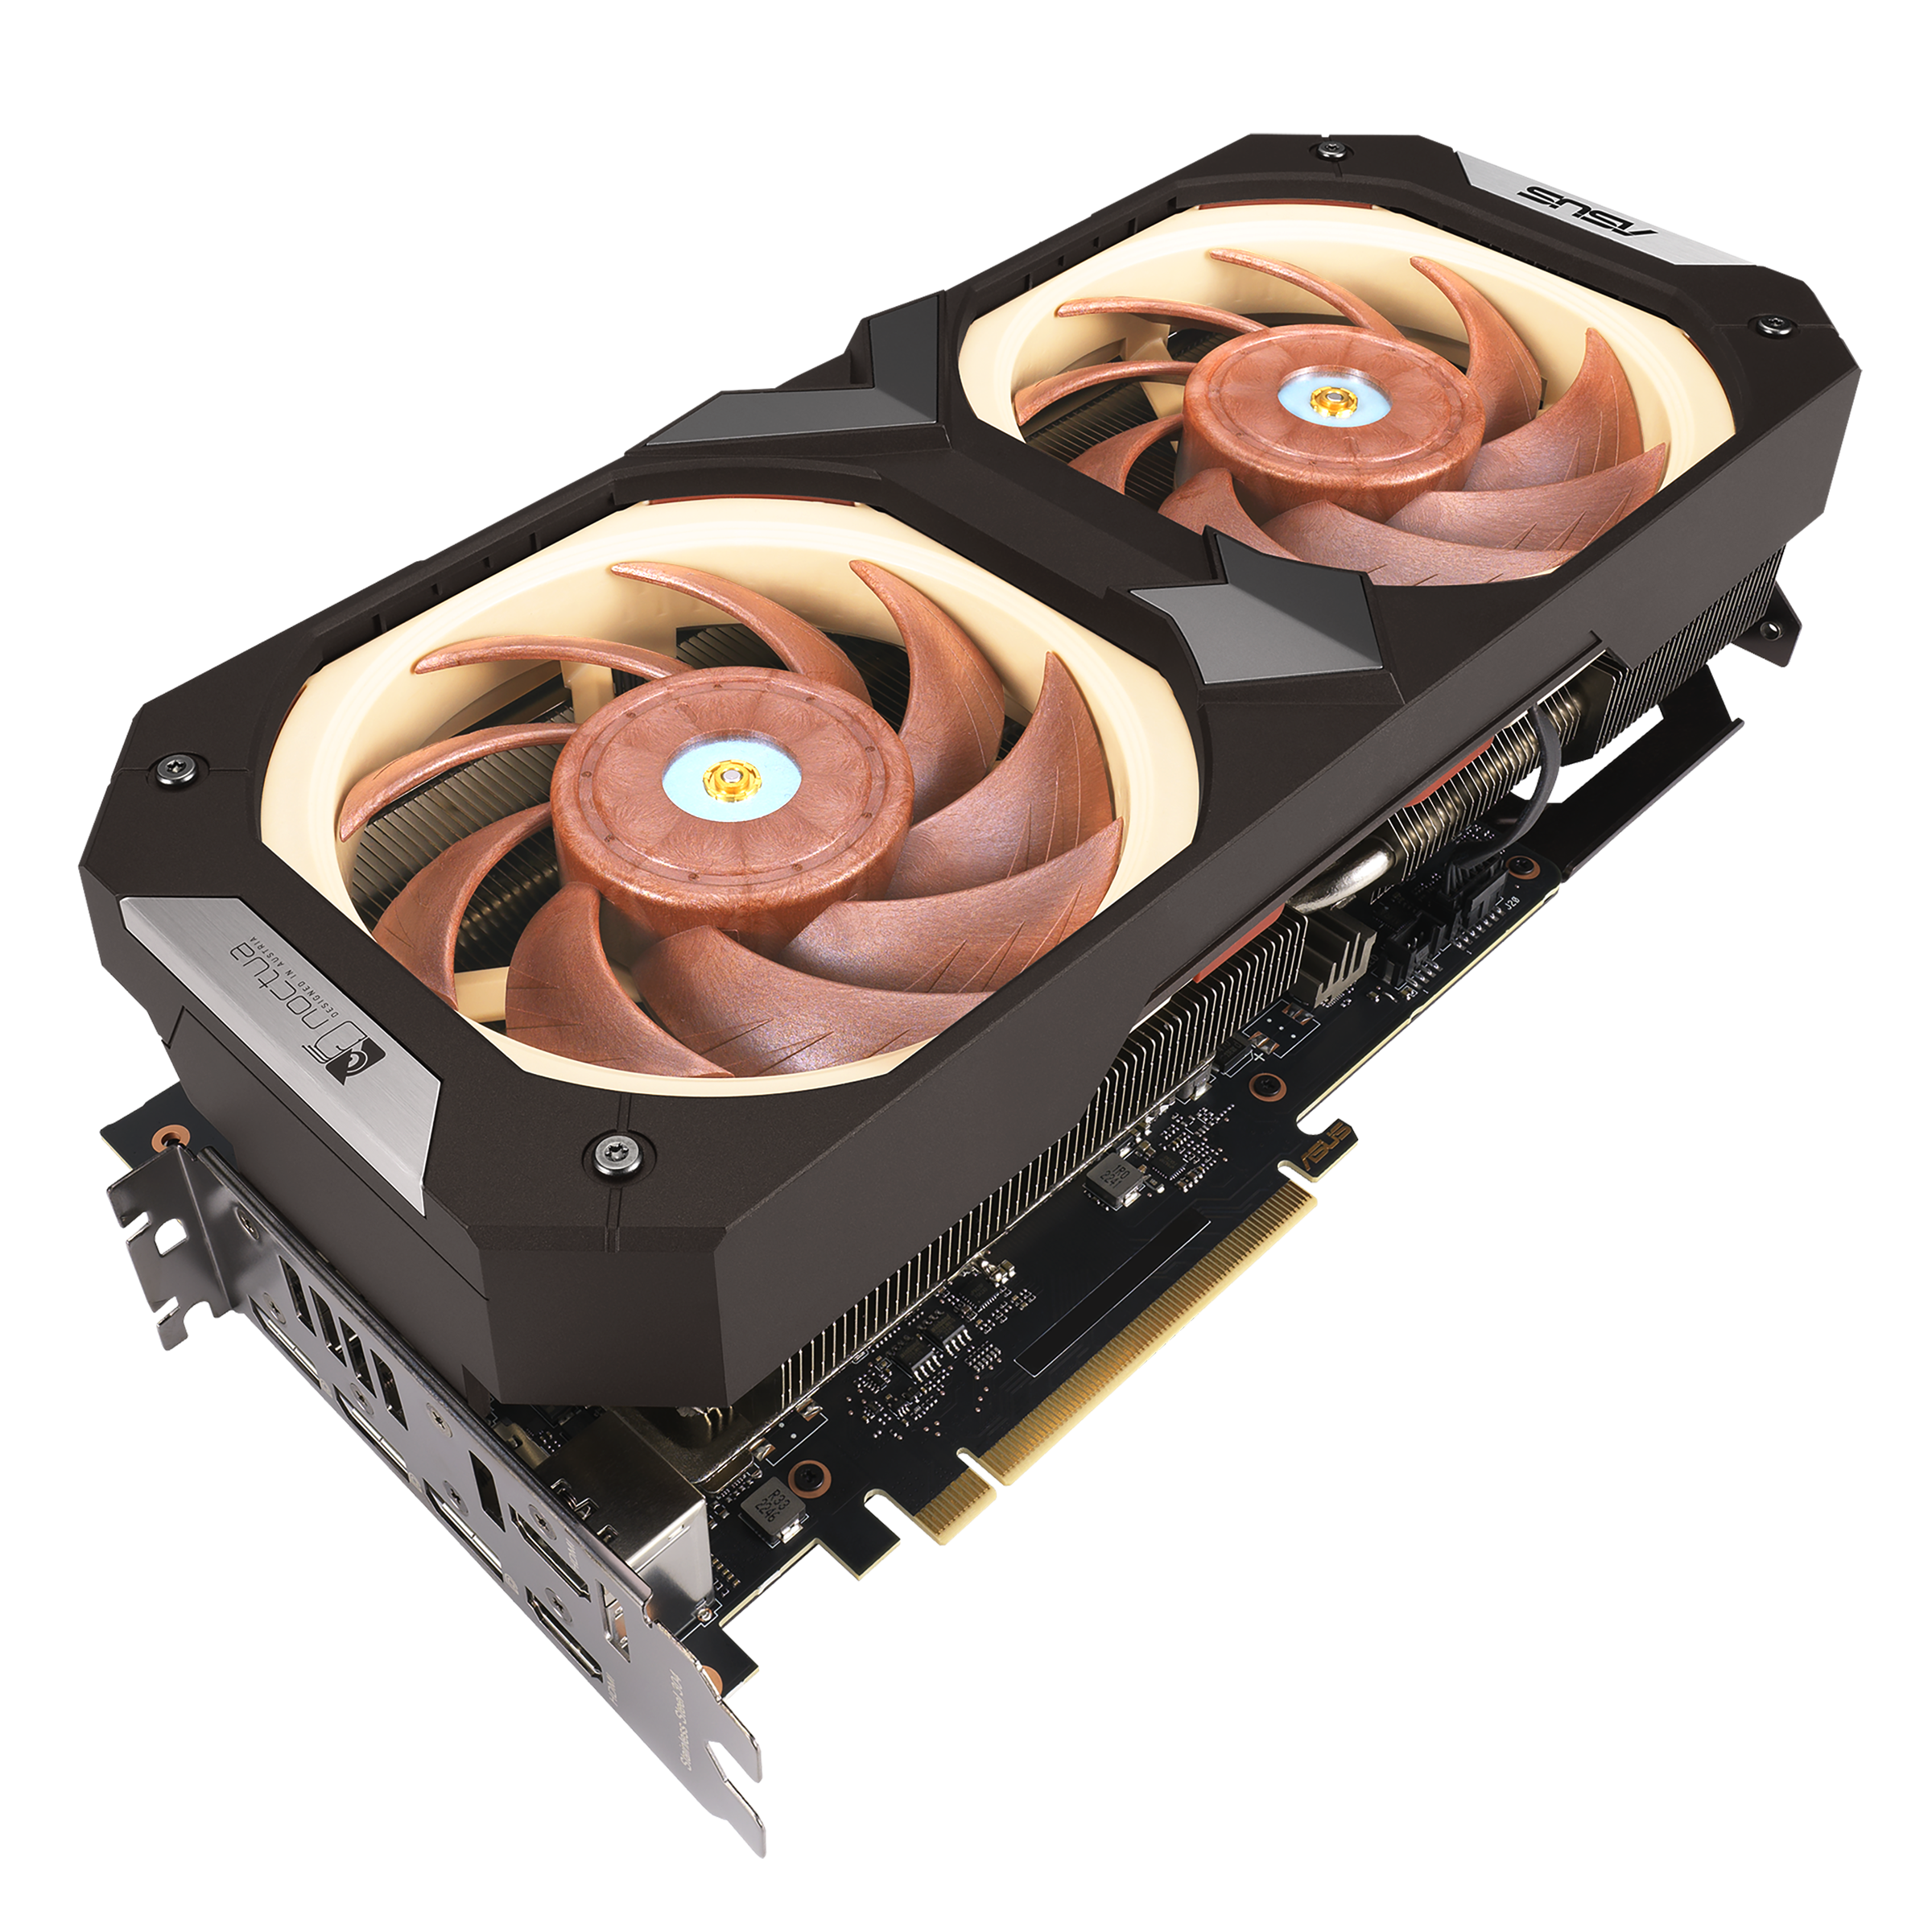 ASUS announces GeForce RTX 4080 Noctua graphics card 